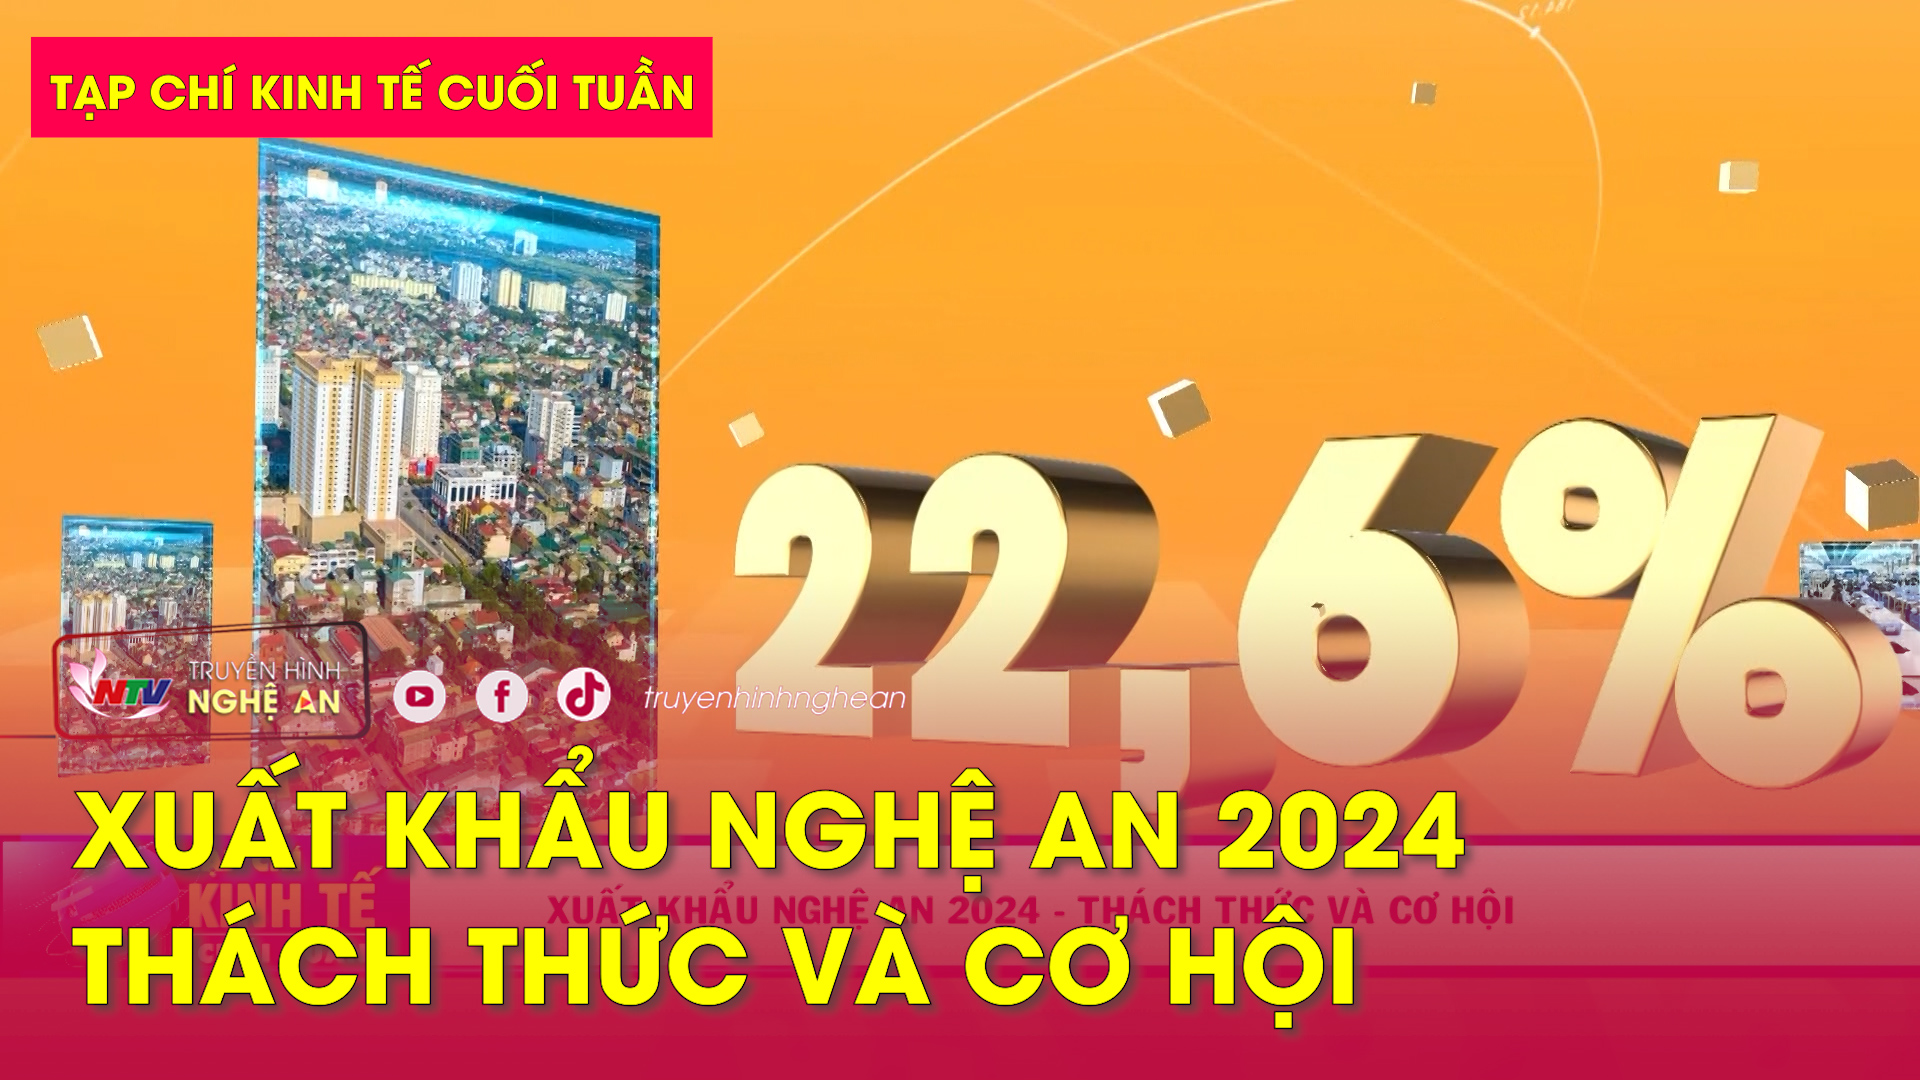 Tạp chí kinh tế cuối tuần: Xuất khẩu Nghệ An 2024 - Thách thức và cơ hội